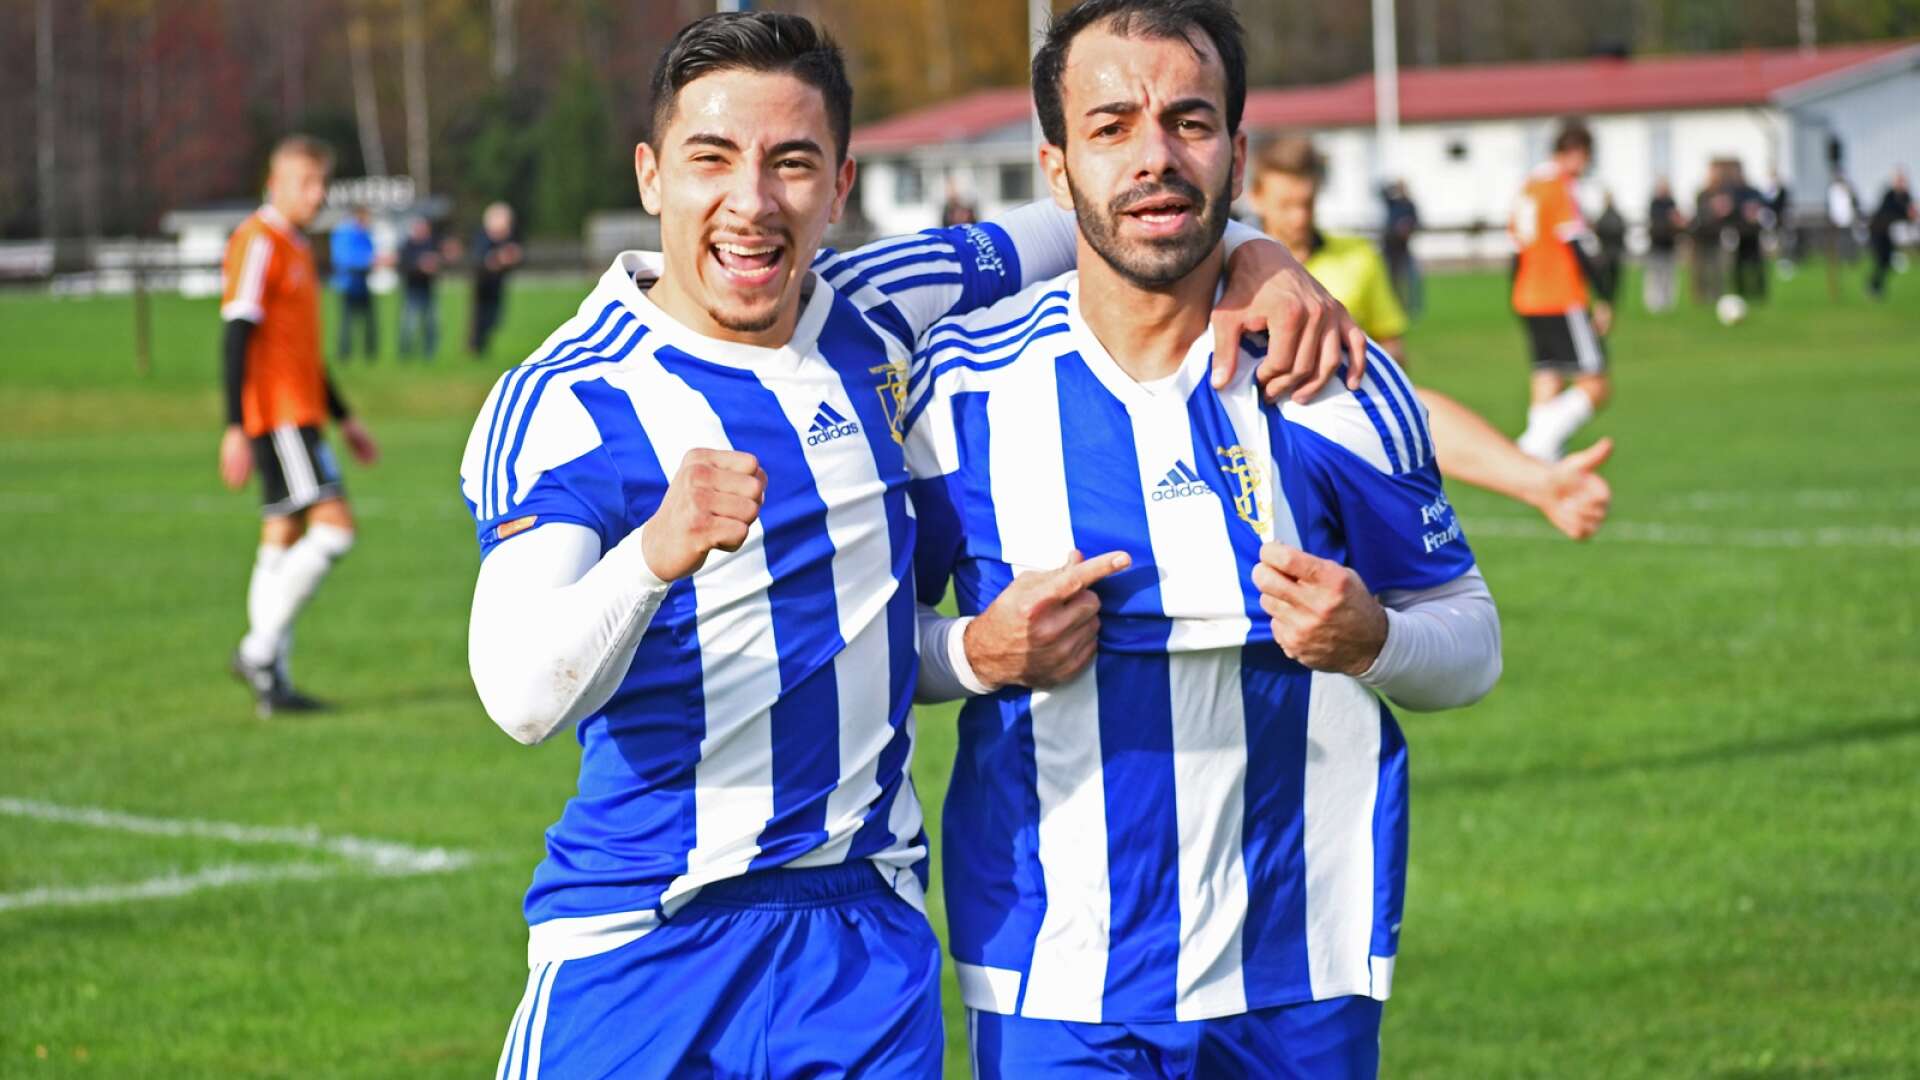 Anderson Parra Parra och Haval Haziz hittade kameran efter 2-0-målet.